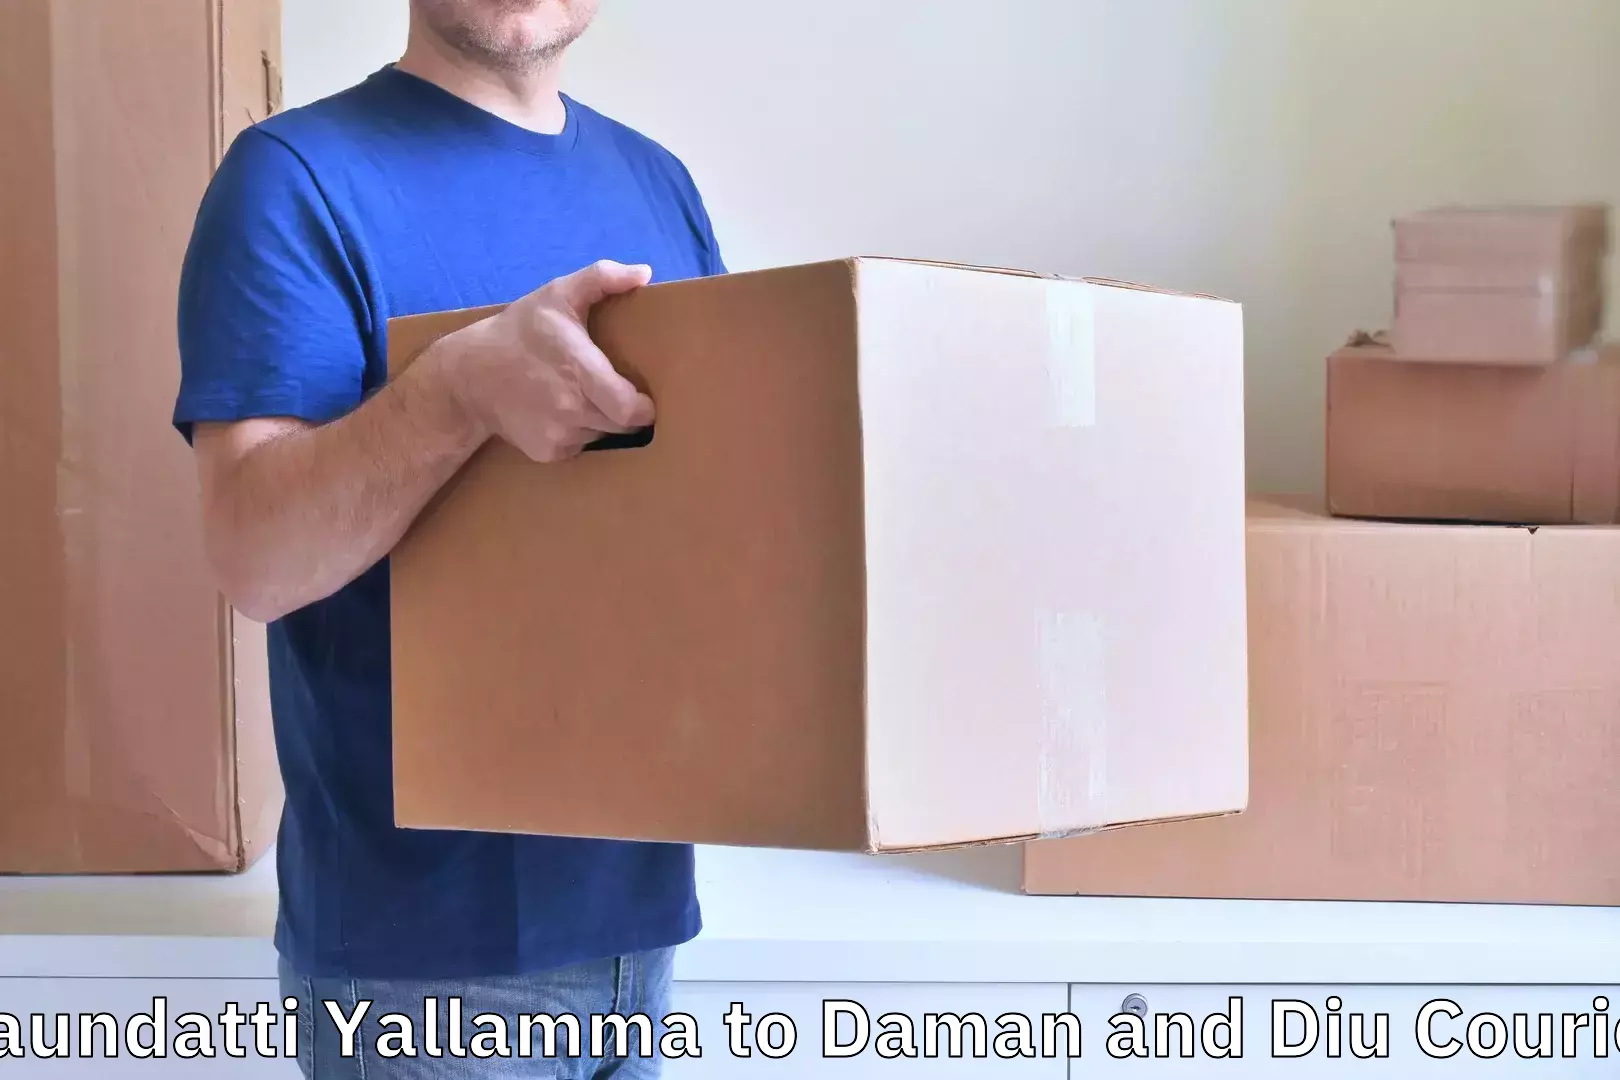 Suburban luggage delivery Saundatti Yallamma to Daman and Diu